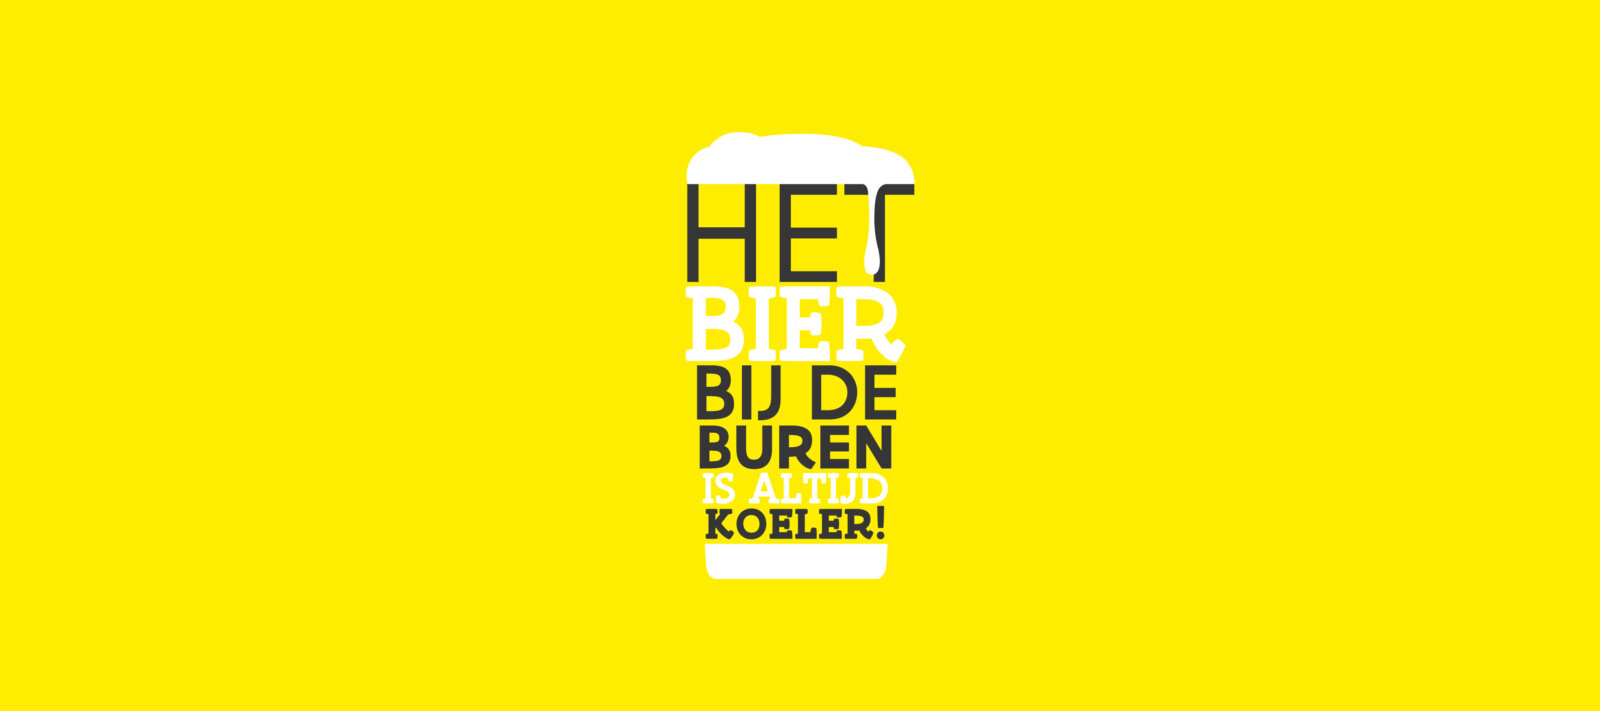 Het bier bij de buren is altijd koeler: marketingactie promoot Vlaanderen bij ondernemend Nederland